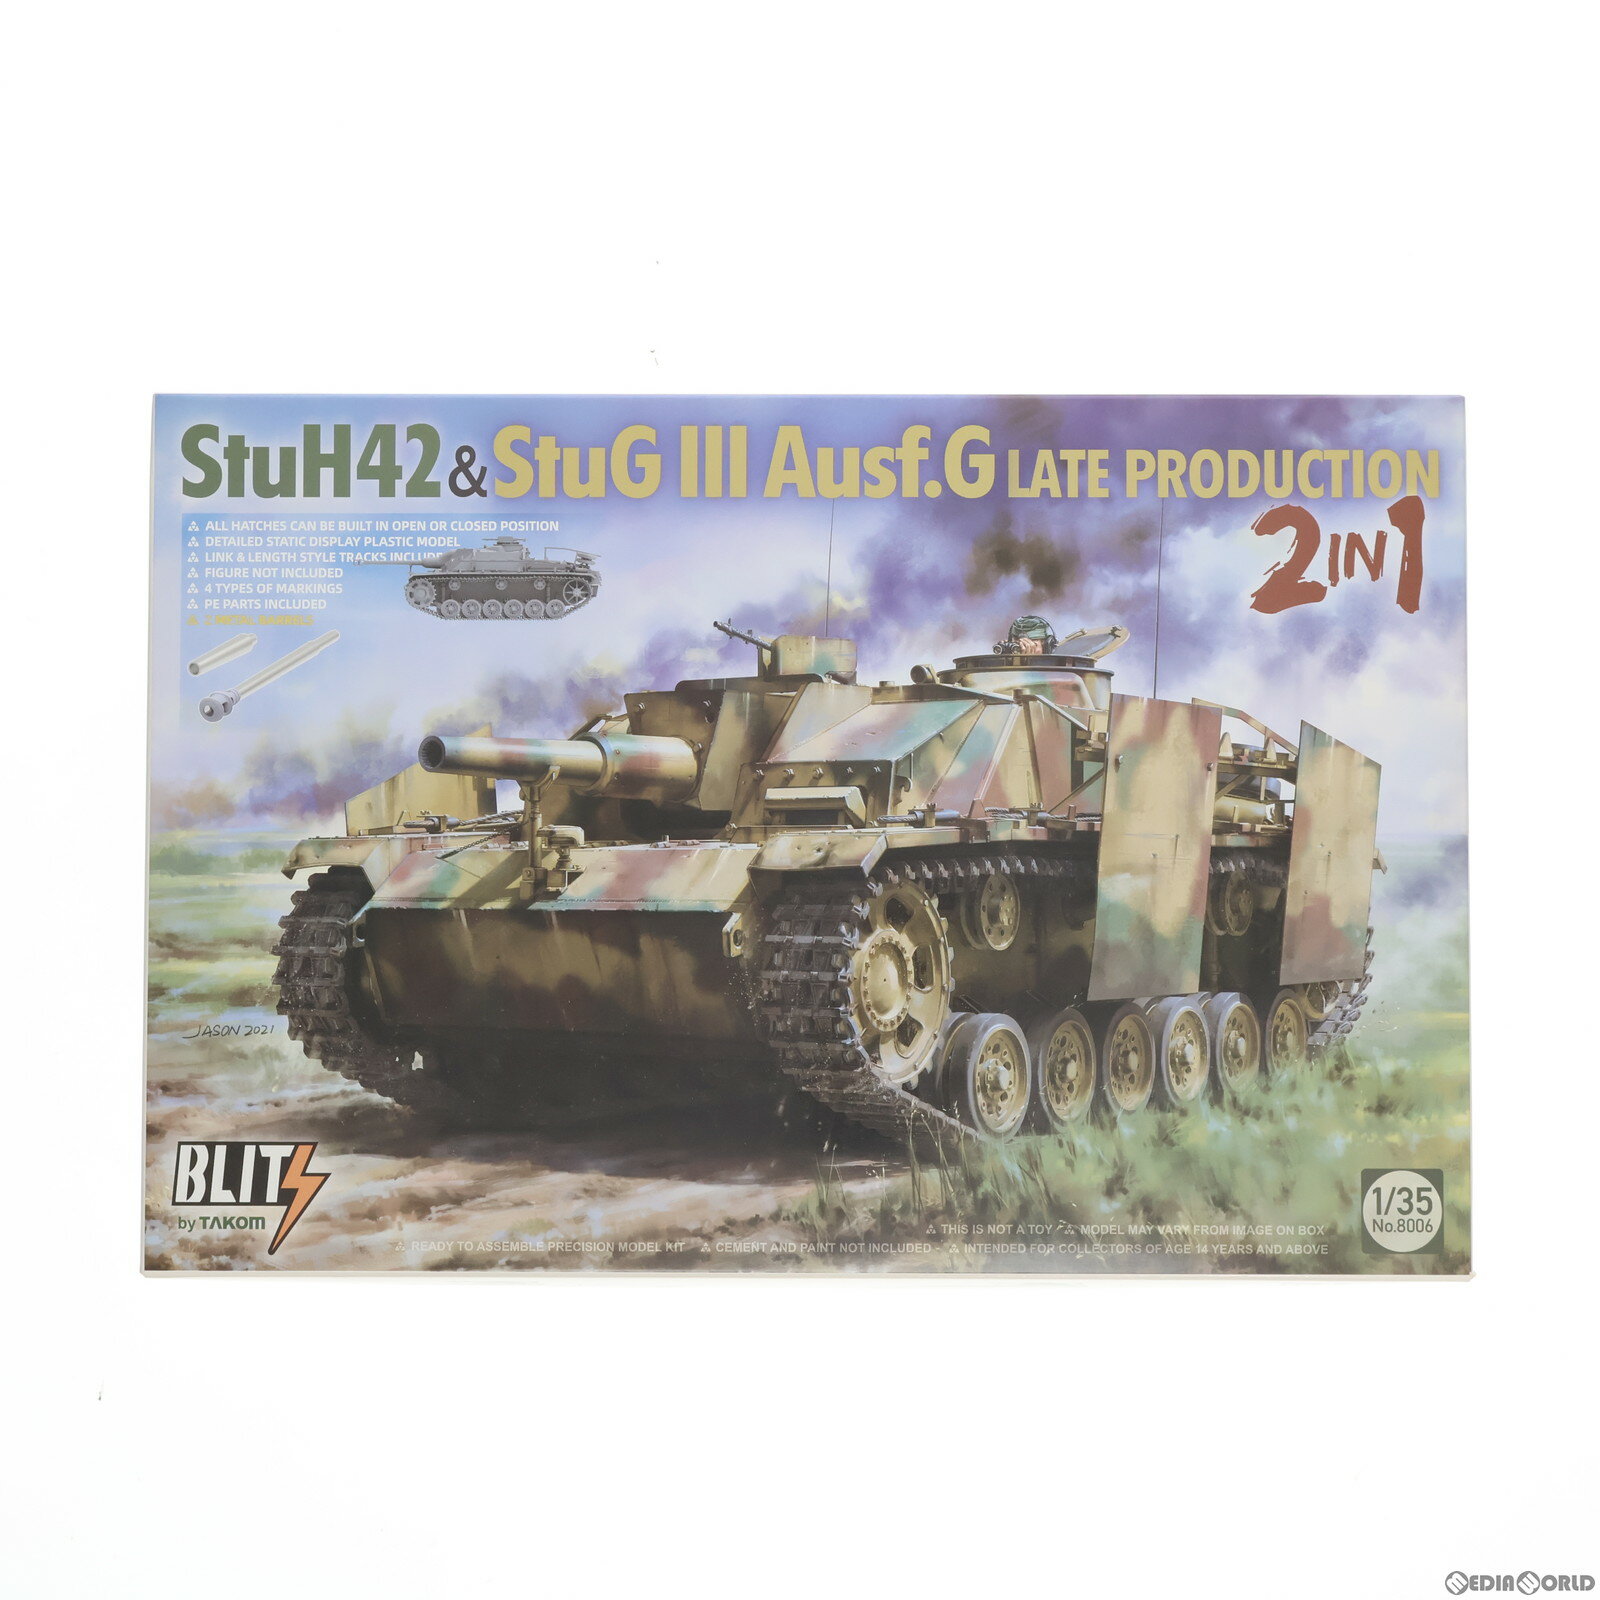 【中古】 PTM BLITSシリーズ(ブリッツシリーズ) 1/35 StuH42 StuG III Ausf.G LATE PRODUCTION 2 in 1 プラモデル(8006) TAKOM(タコム)(20211216)